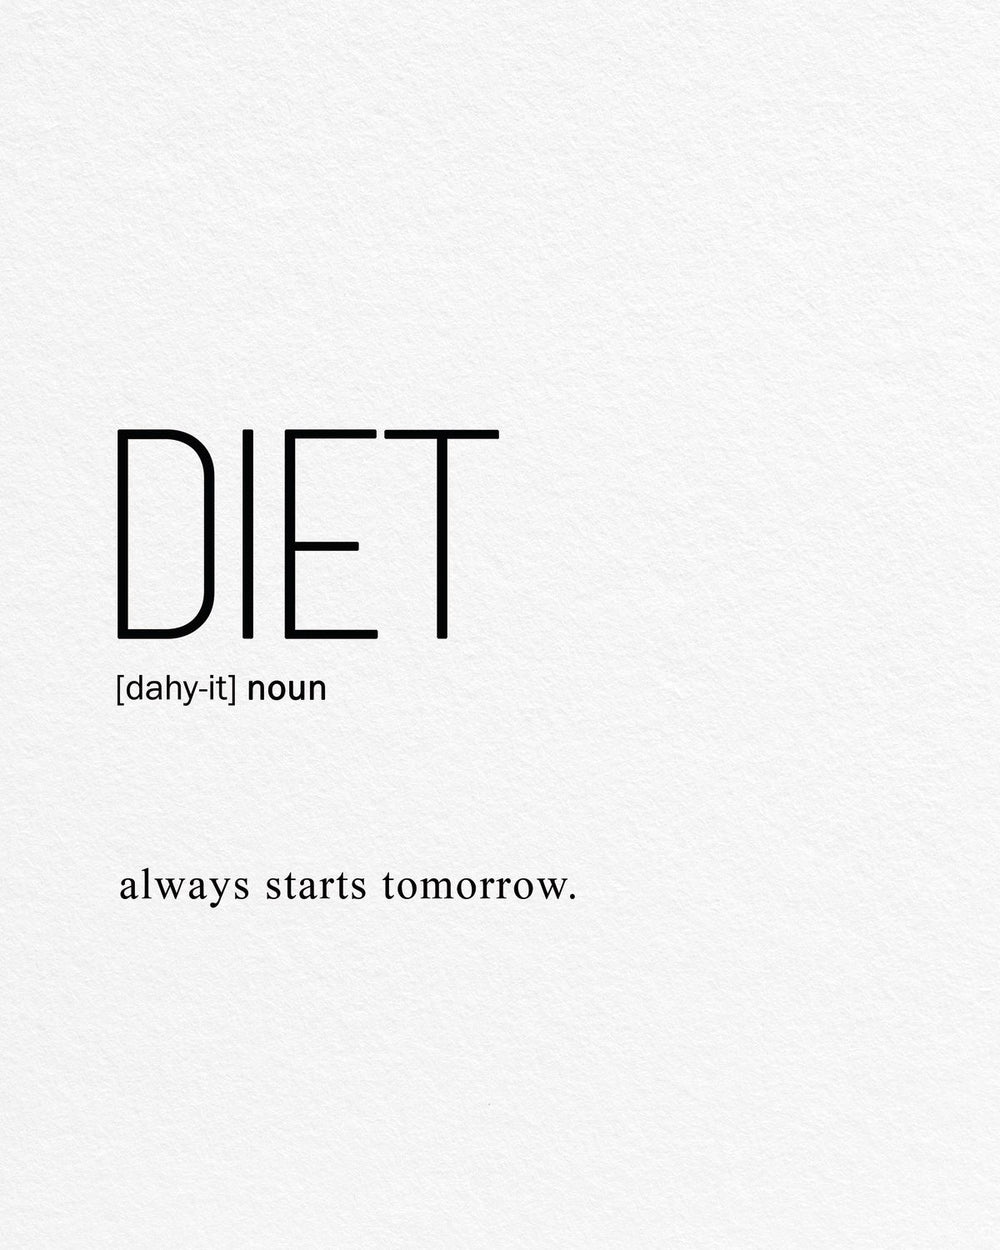 Diet Definition